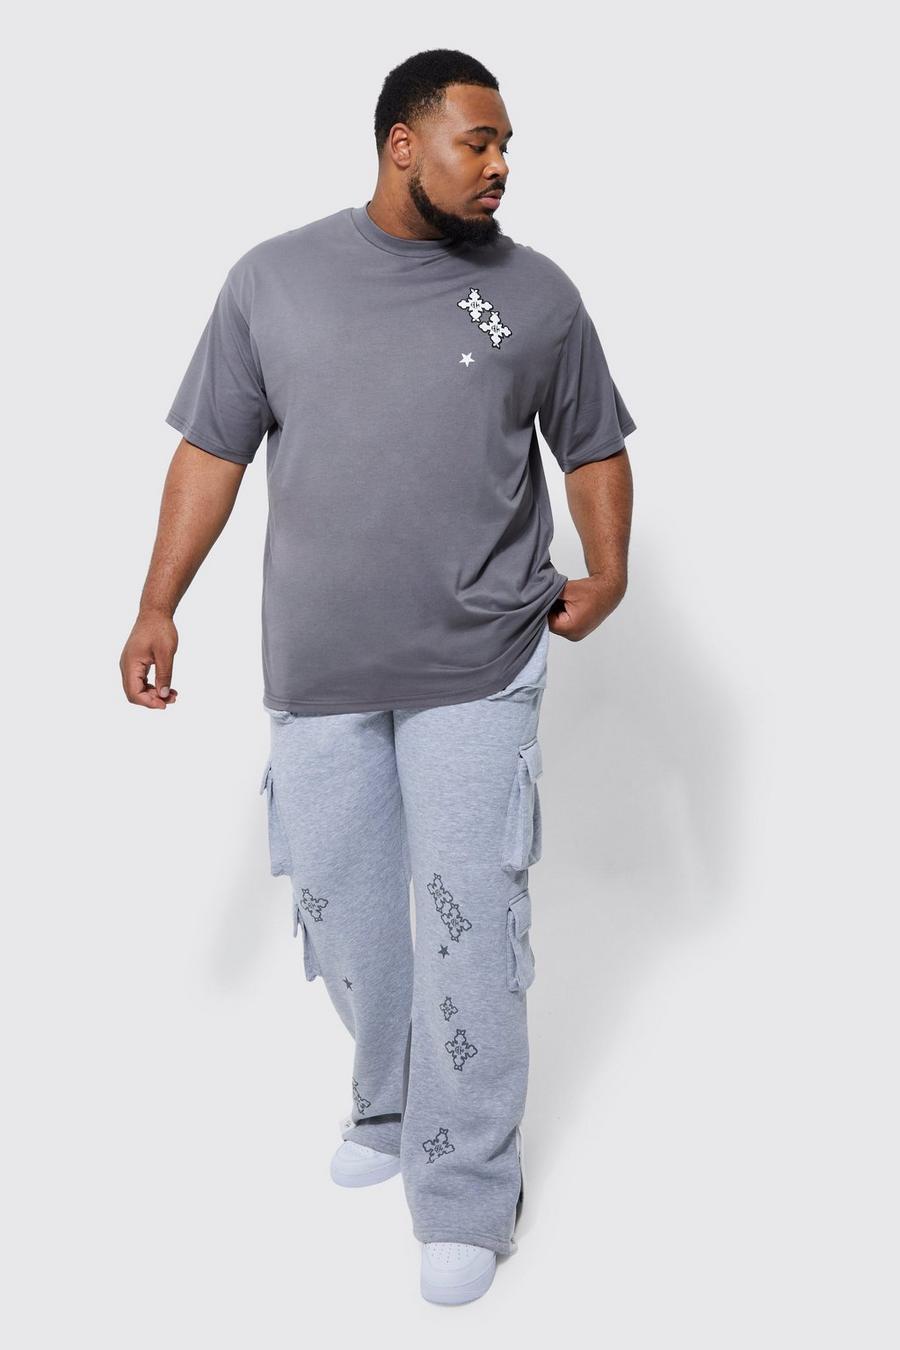 Chándal Plus de camiseta con botones de presión en el filo y estampado gráfico, Charcoal grey